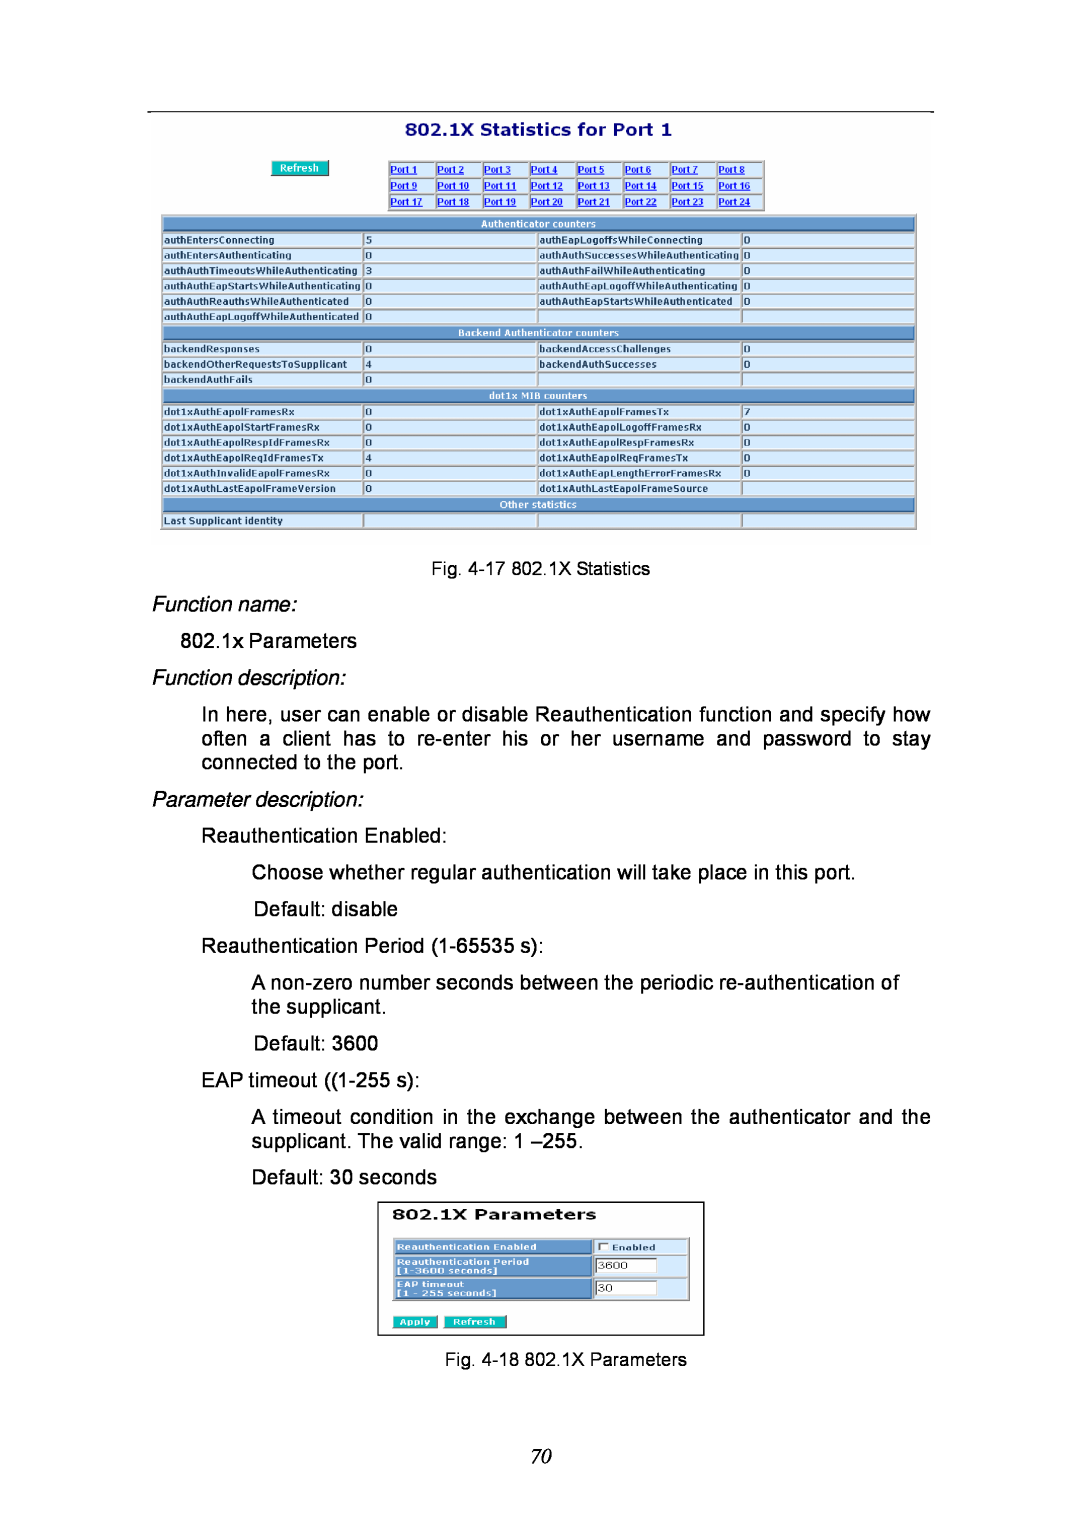 KTI Networks KGS-2404 manual Function name, 802.1x Parameters, Function description, Parameter description 